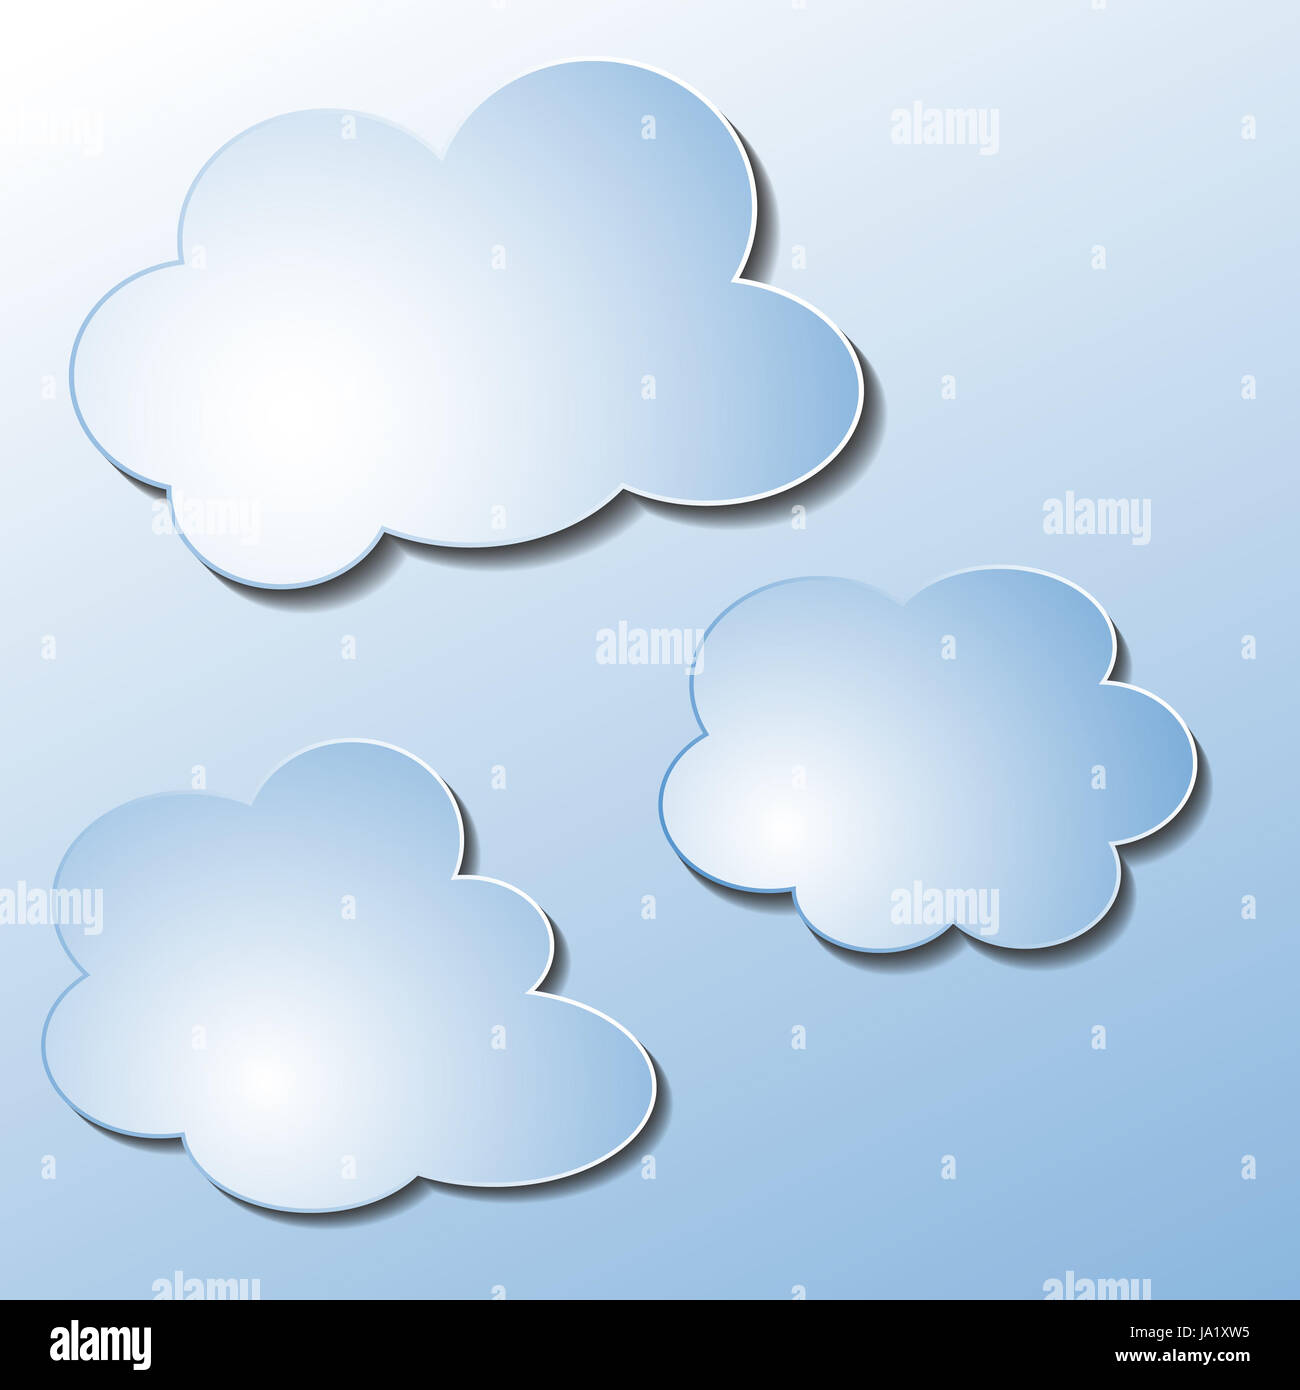 verschiedene wolken - illustration Stock Photo - Alamy